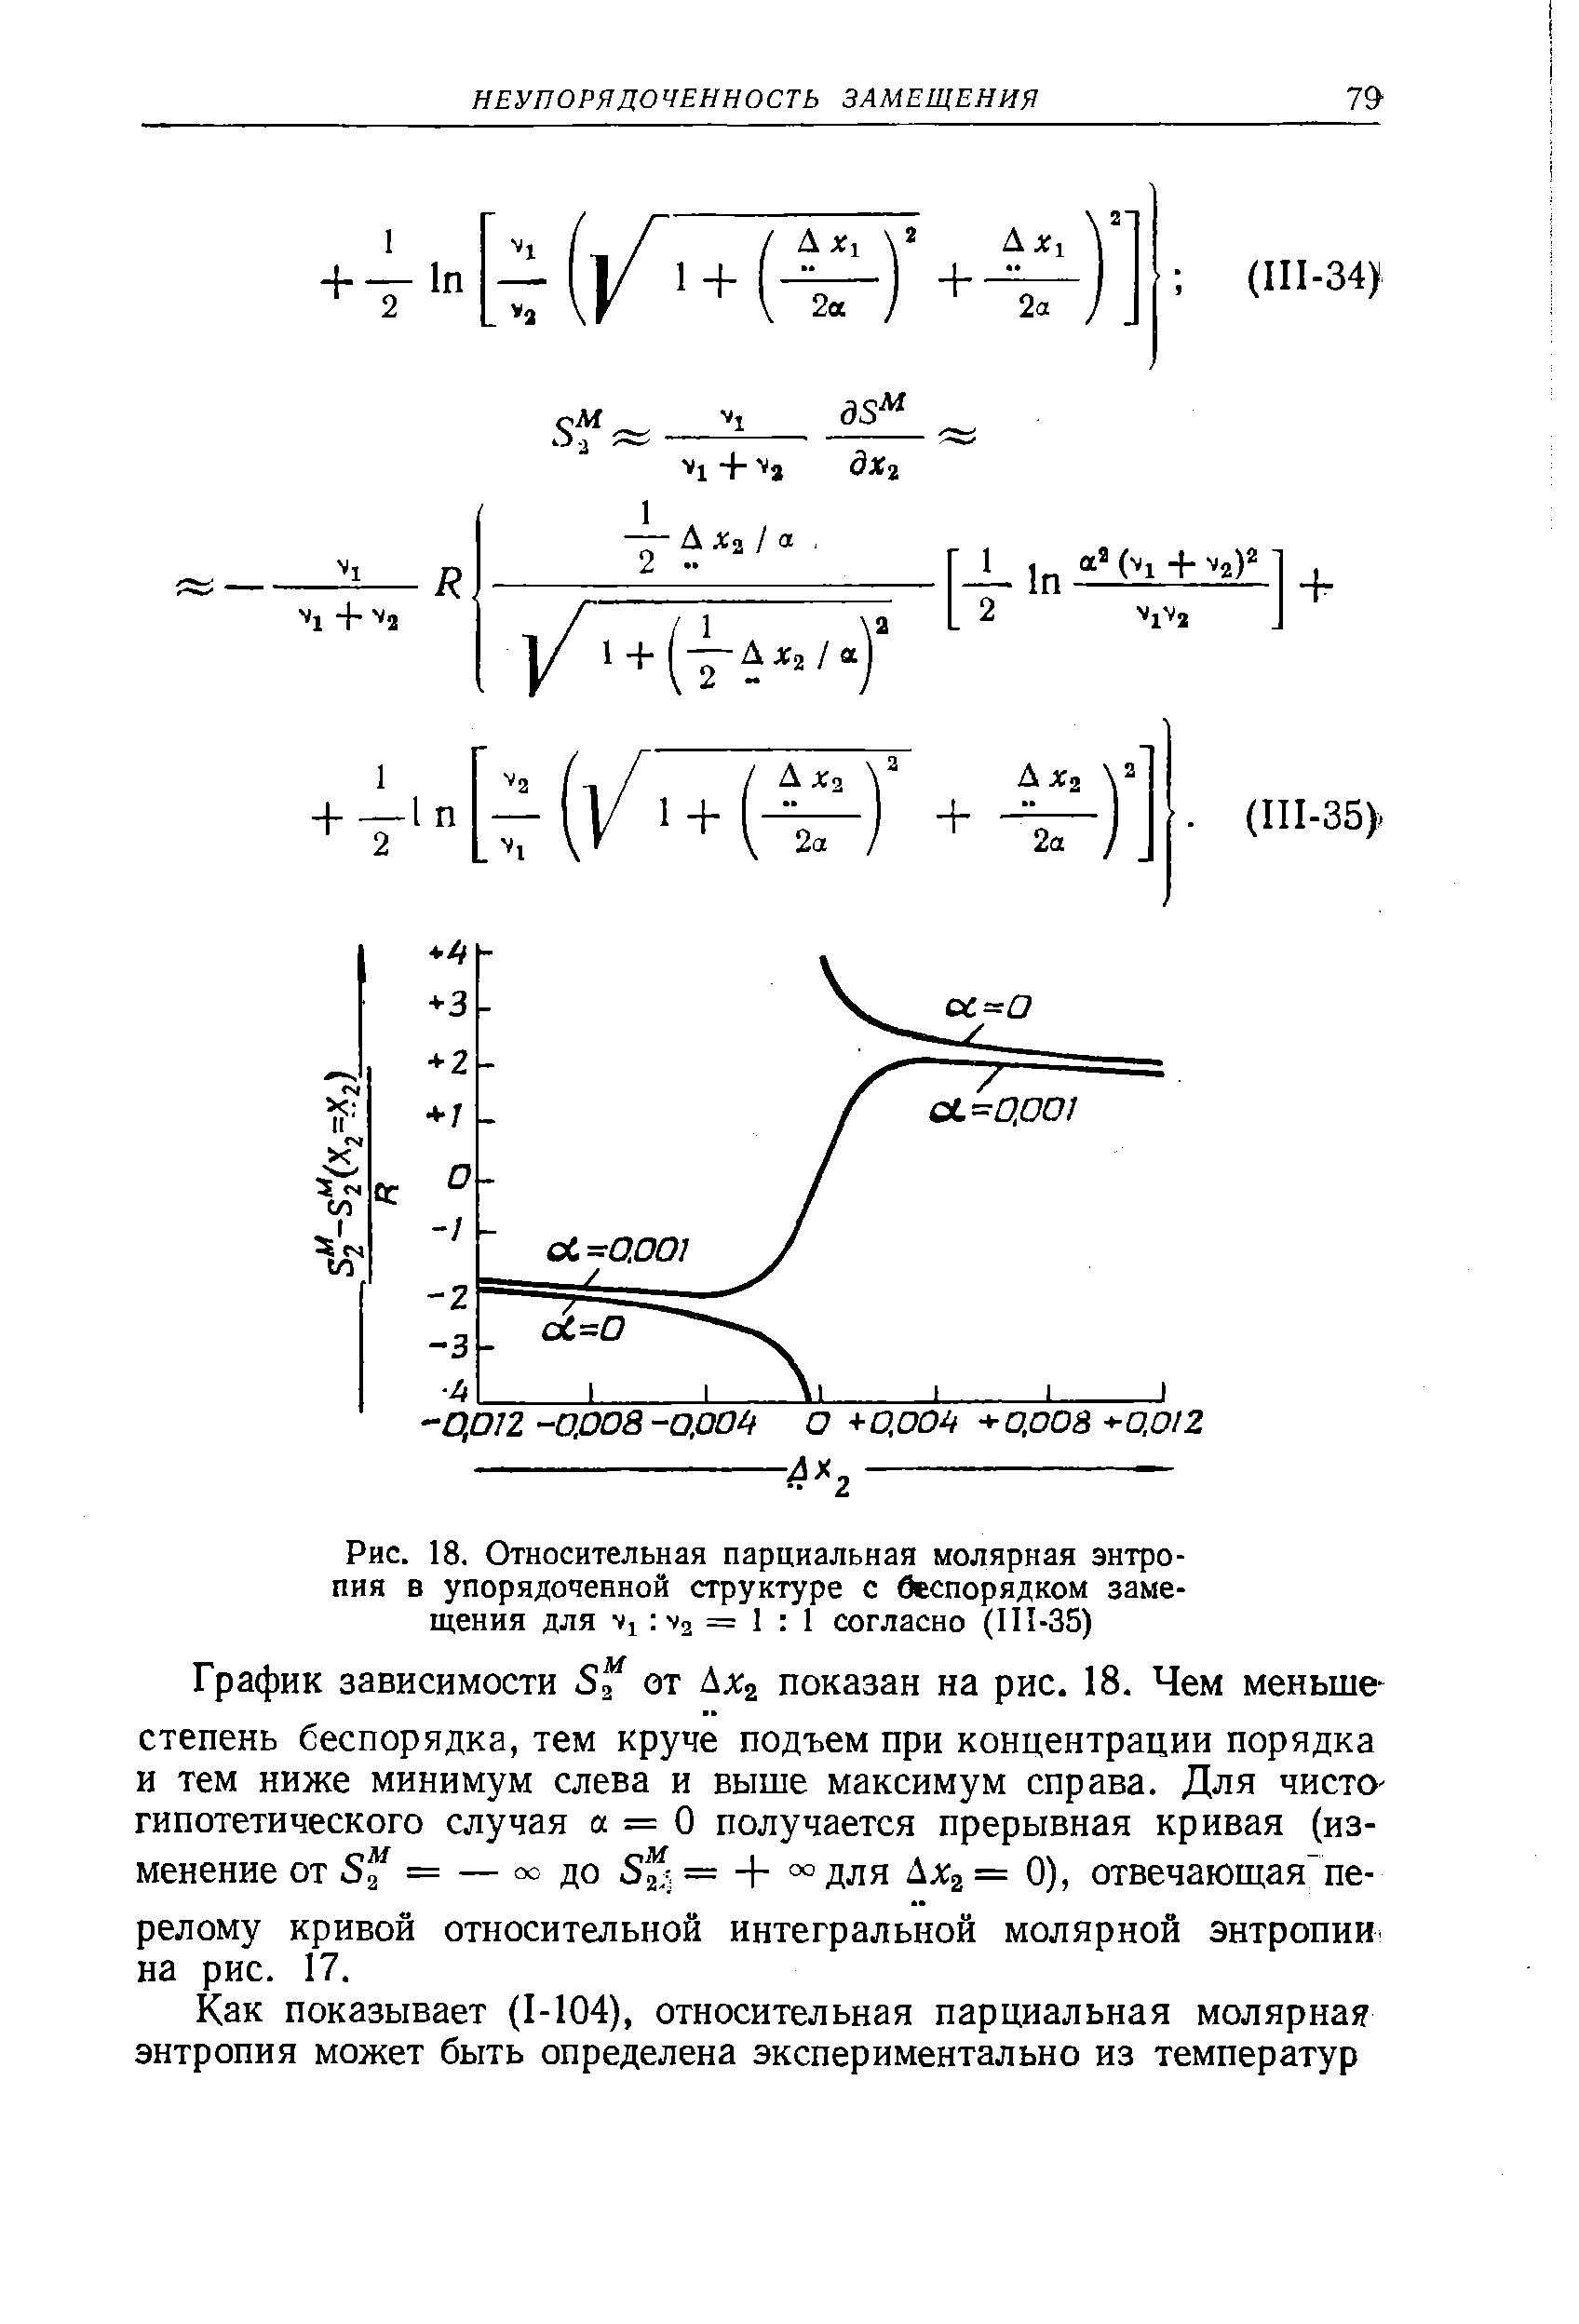 Рис. 18. Относительная парциальная молярная энтропия в упорядоченной структуре с беспорядком замещения для vi V2 = 1 1 согласно (III-35)
